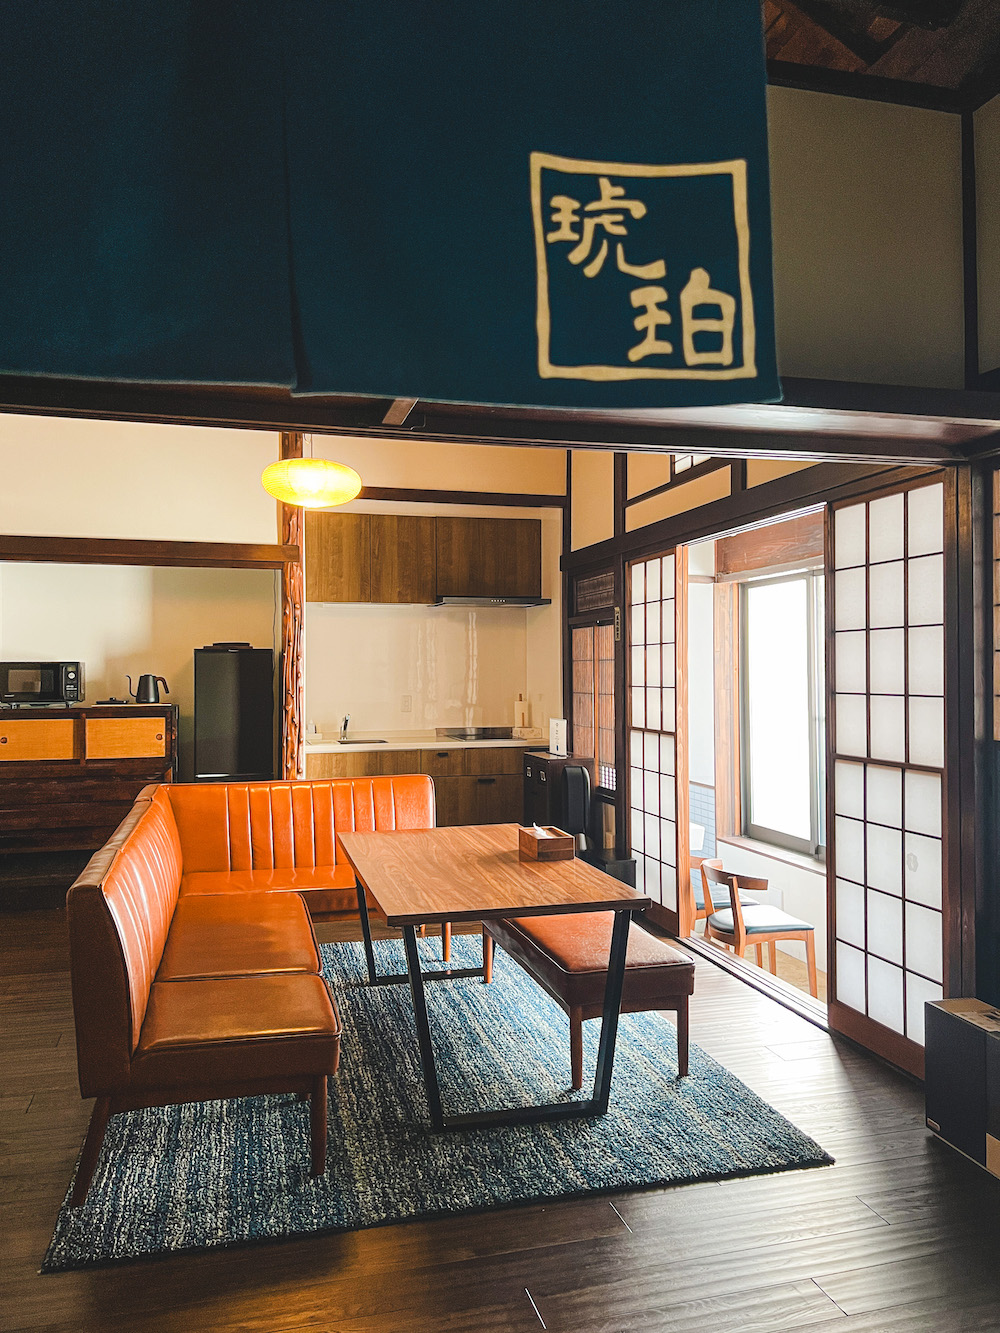 airbnb kamakura in japan